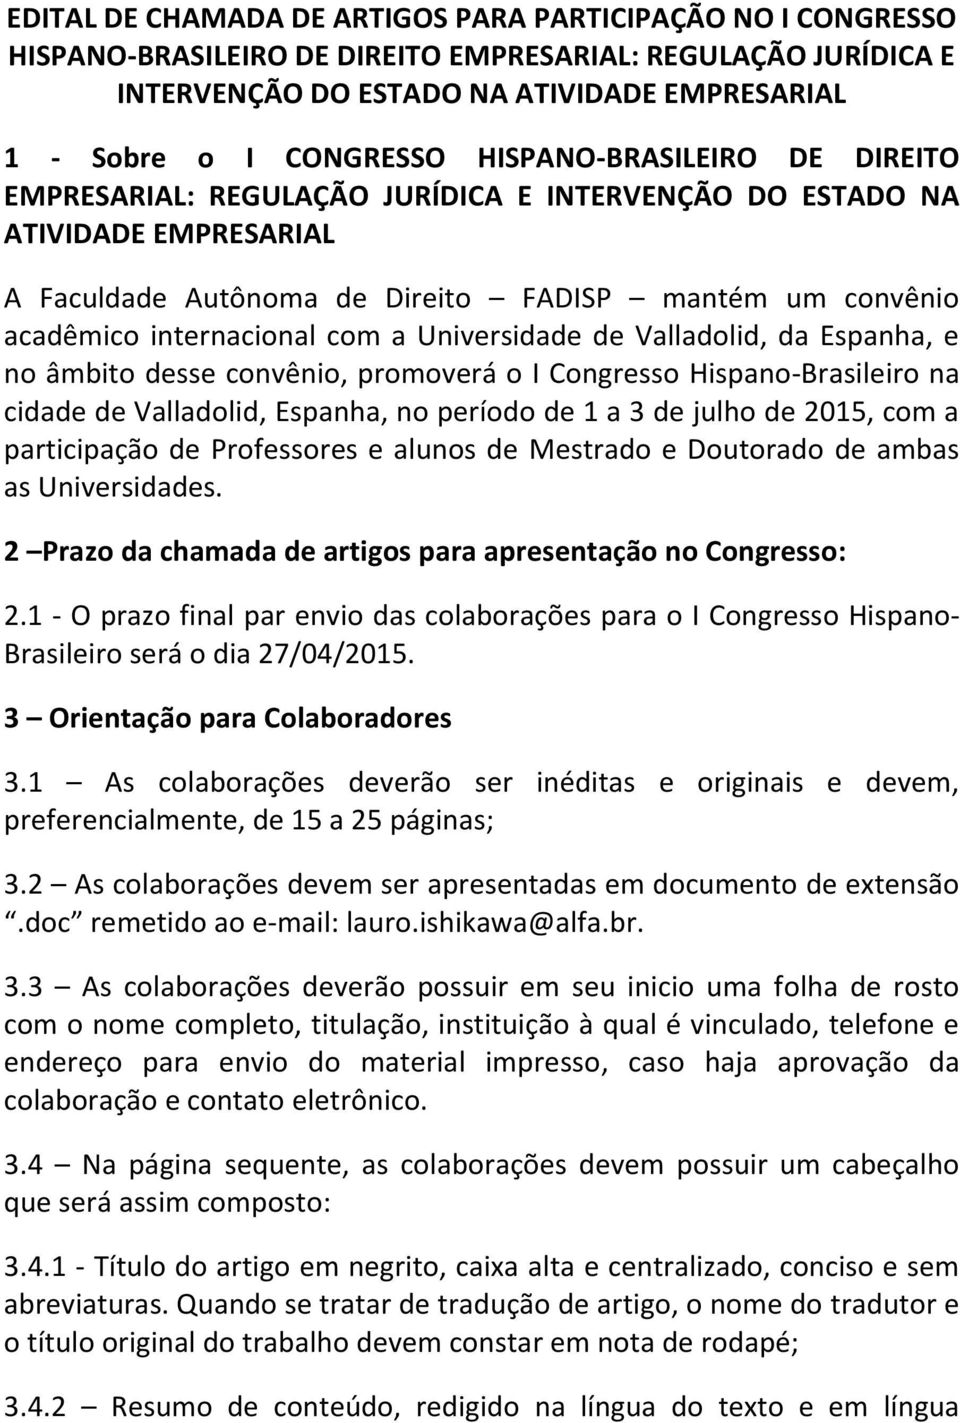 Universidade de Valladolid, da Espanha, e no âmbito desse convênio, promoverá o I Congresso Hispano-Brasileiro na cidade de Valladolid, Espanha, no período de 1 a 3 de julho de 2015, com a